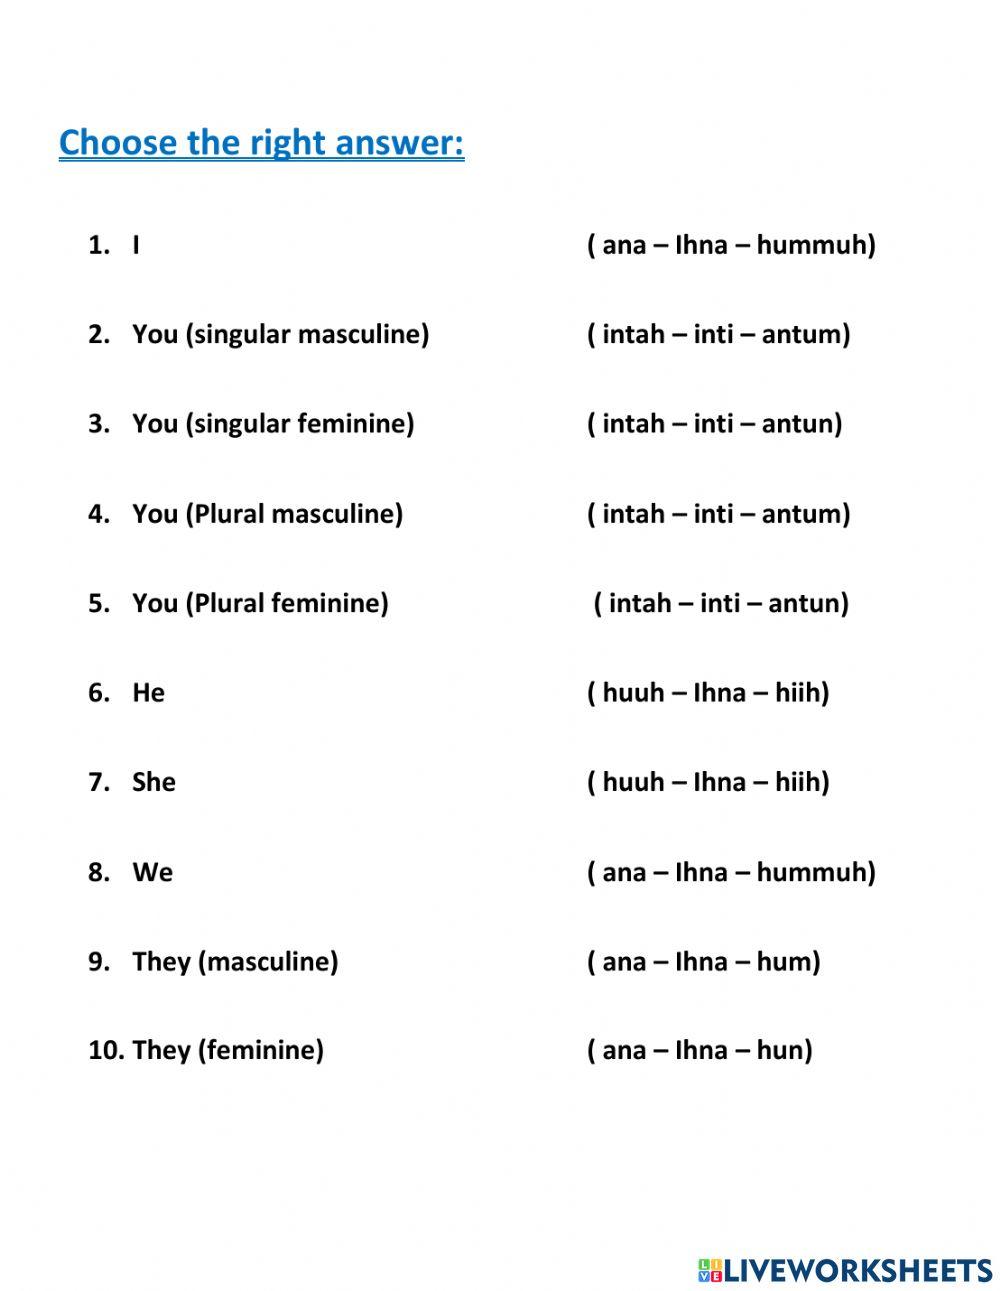 Arabic pronouns